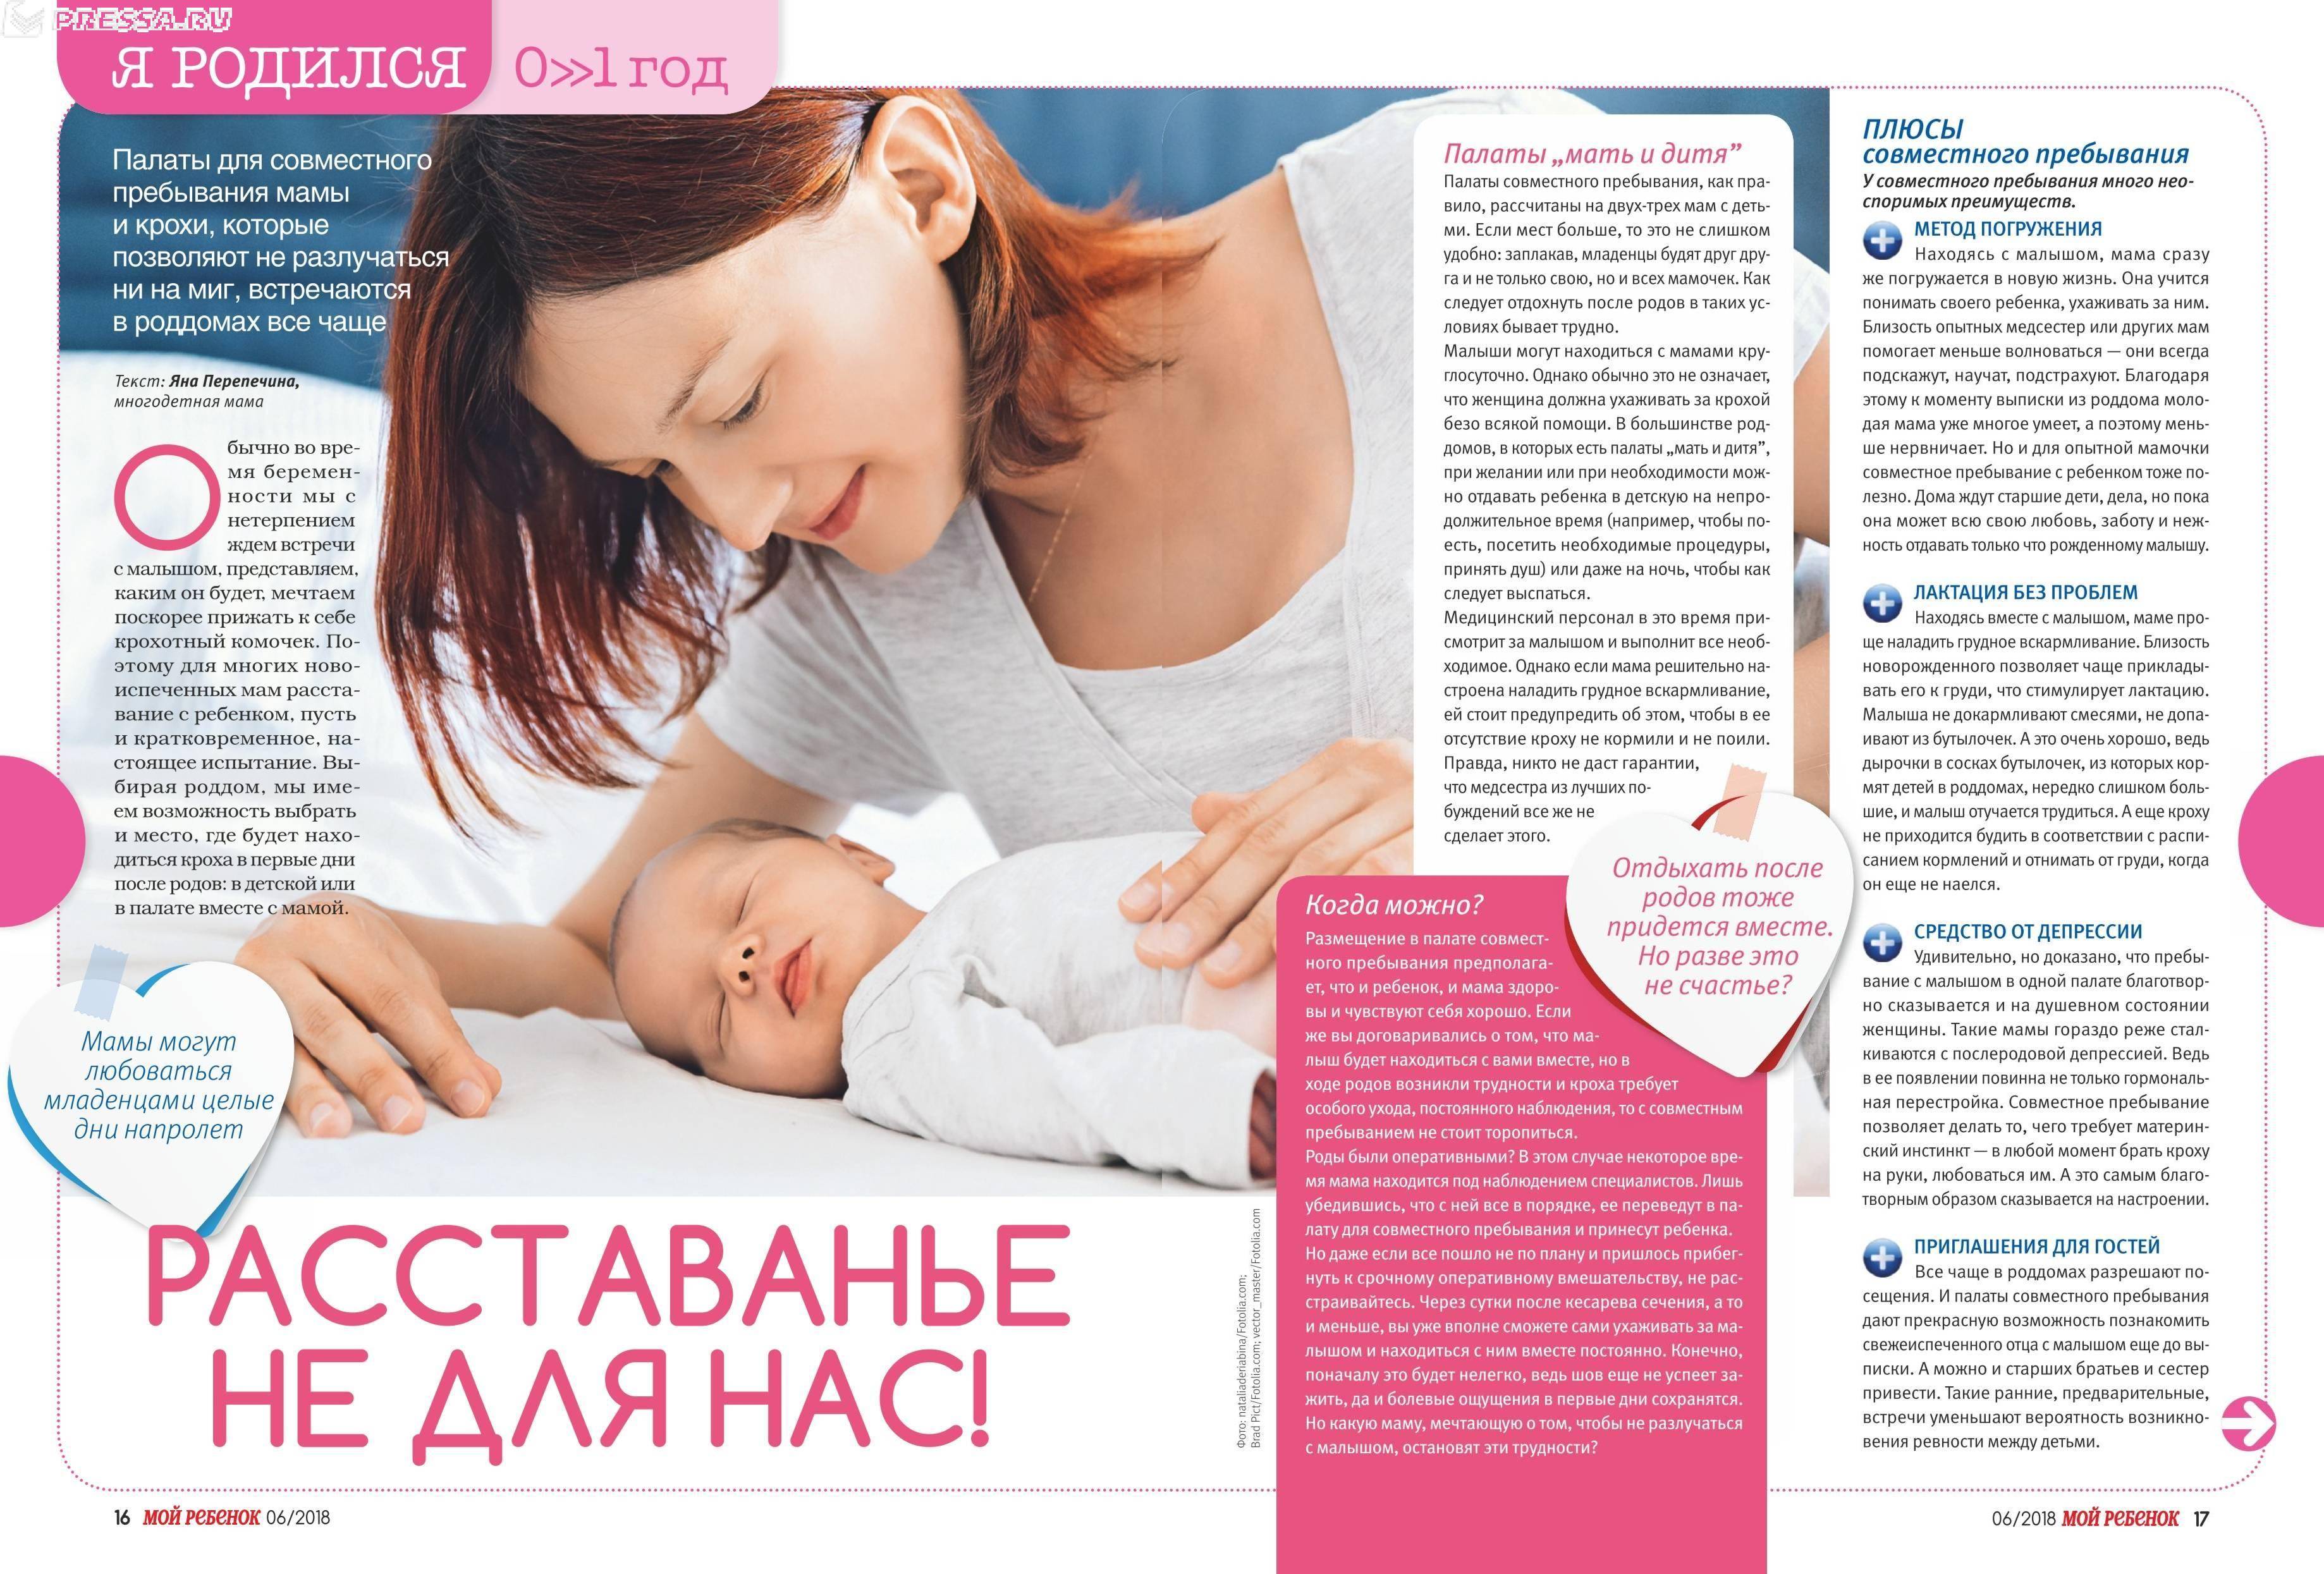 Диета при грудном вскармливании, рацион питания кормящей матери новорожденного, таблица по месяцам - medside.ru